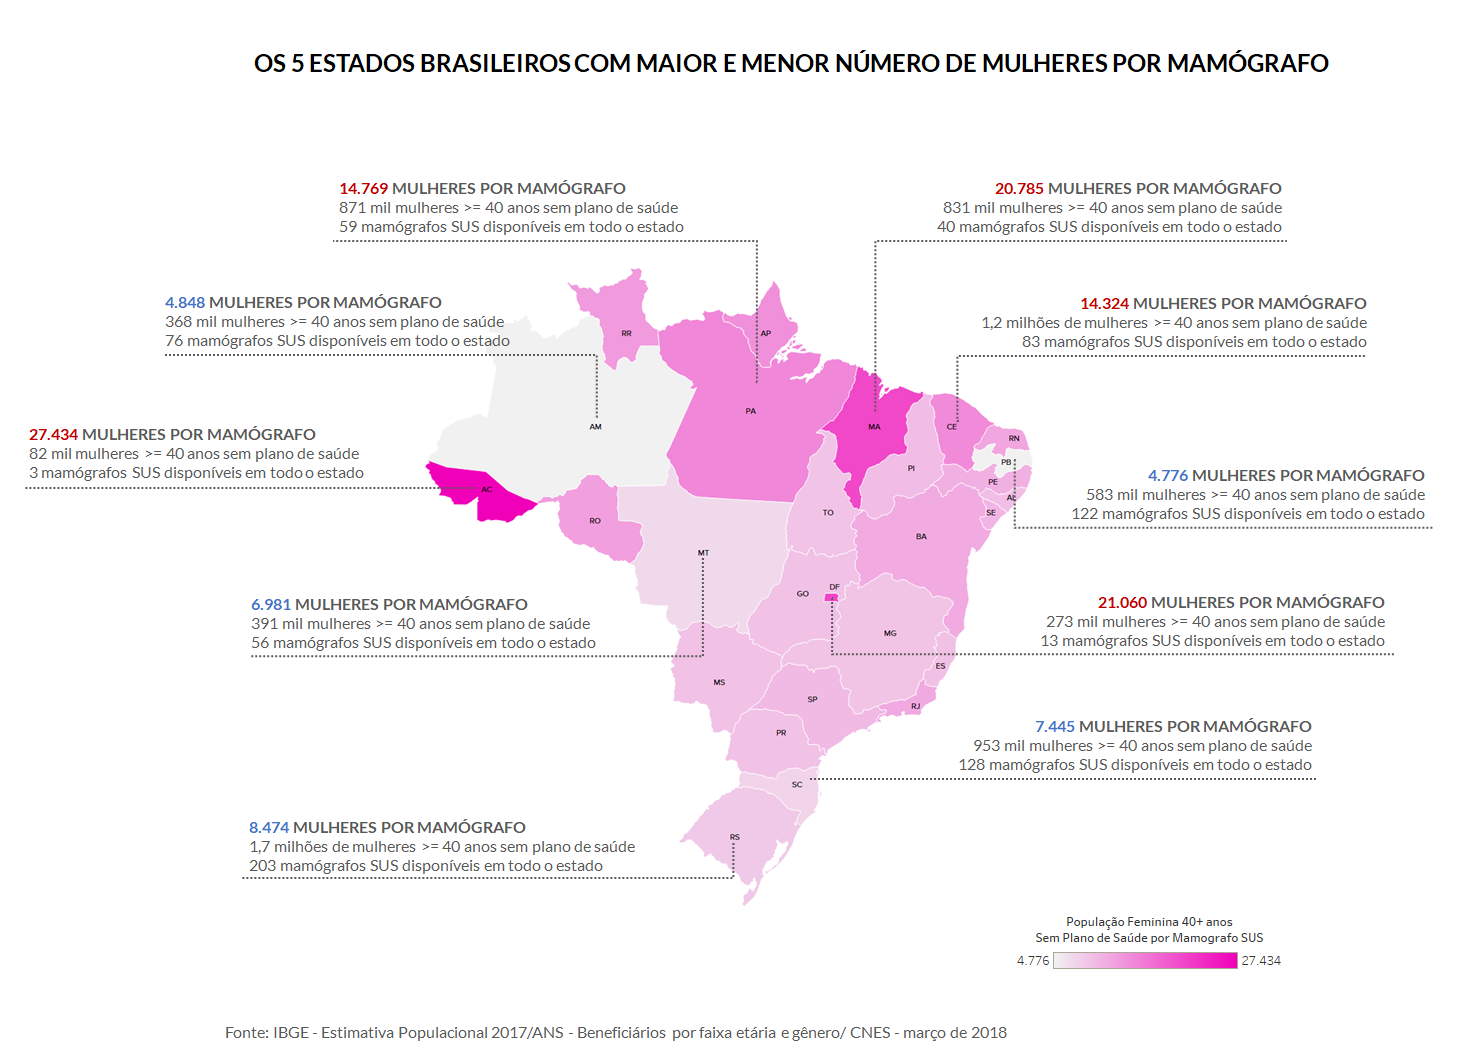 Os 5 estados brasileiros com maior e menor número de mulheres por mamógrafo